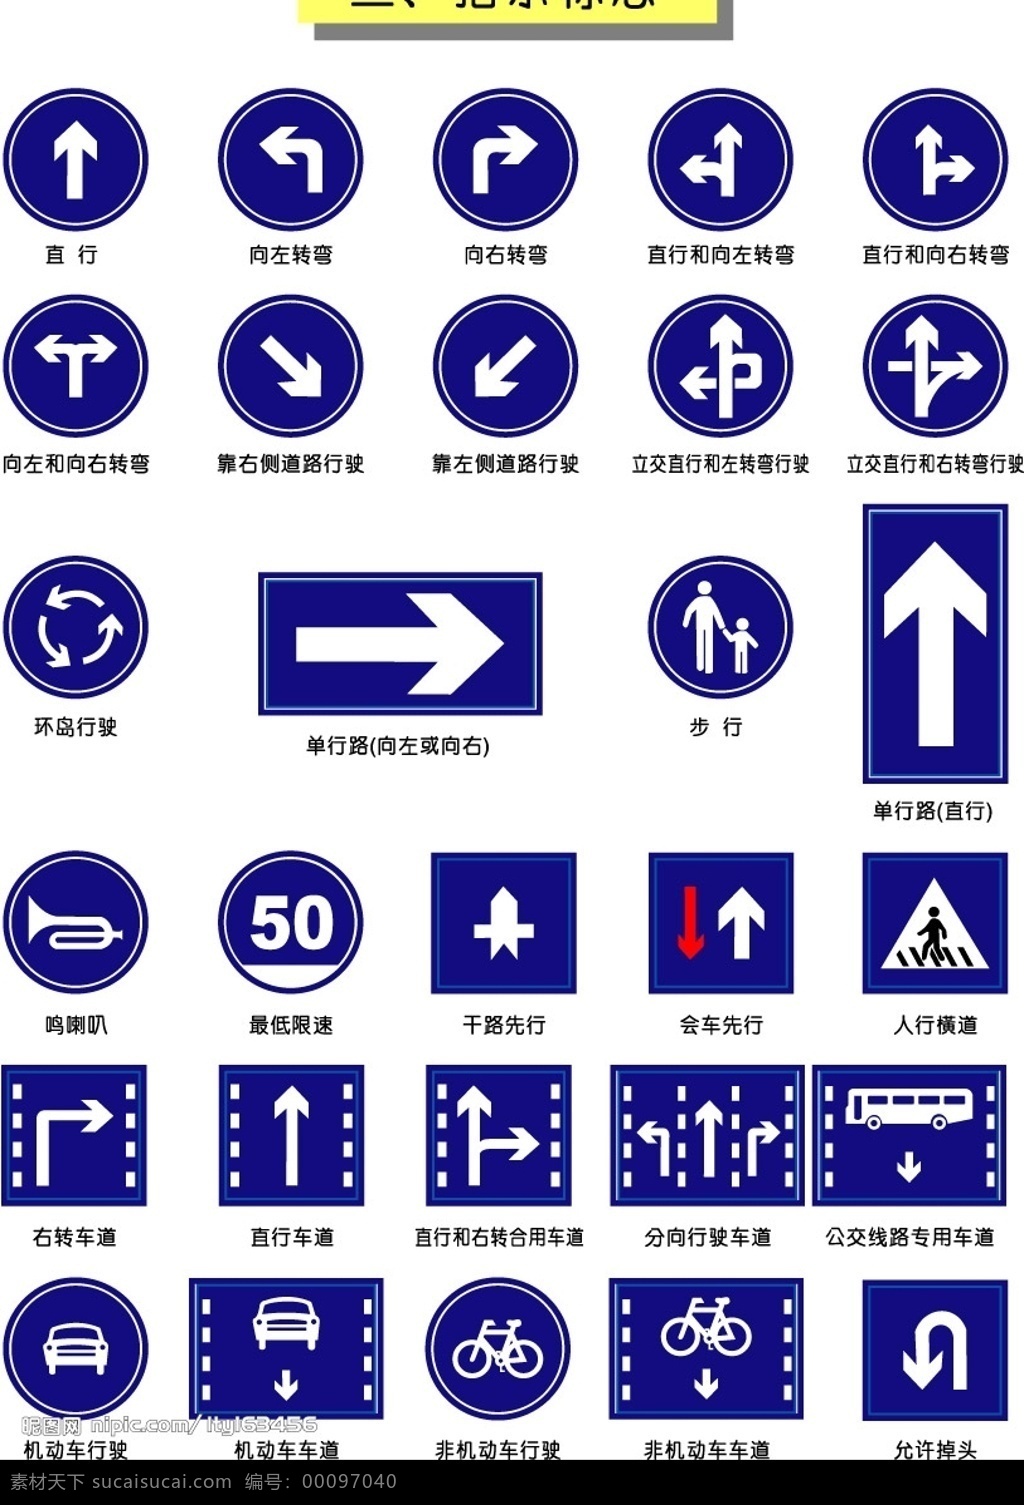 交通指示标志 左转 右转 人行道 单行道 允许调头 其他矢量 矢量素材 矢量图库